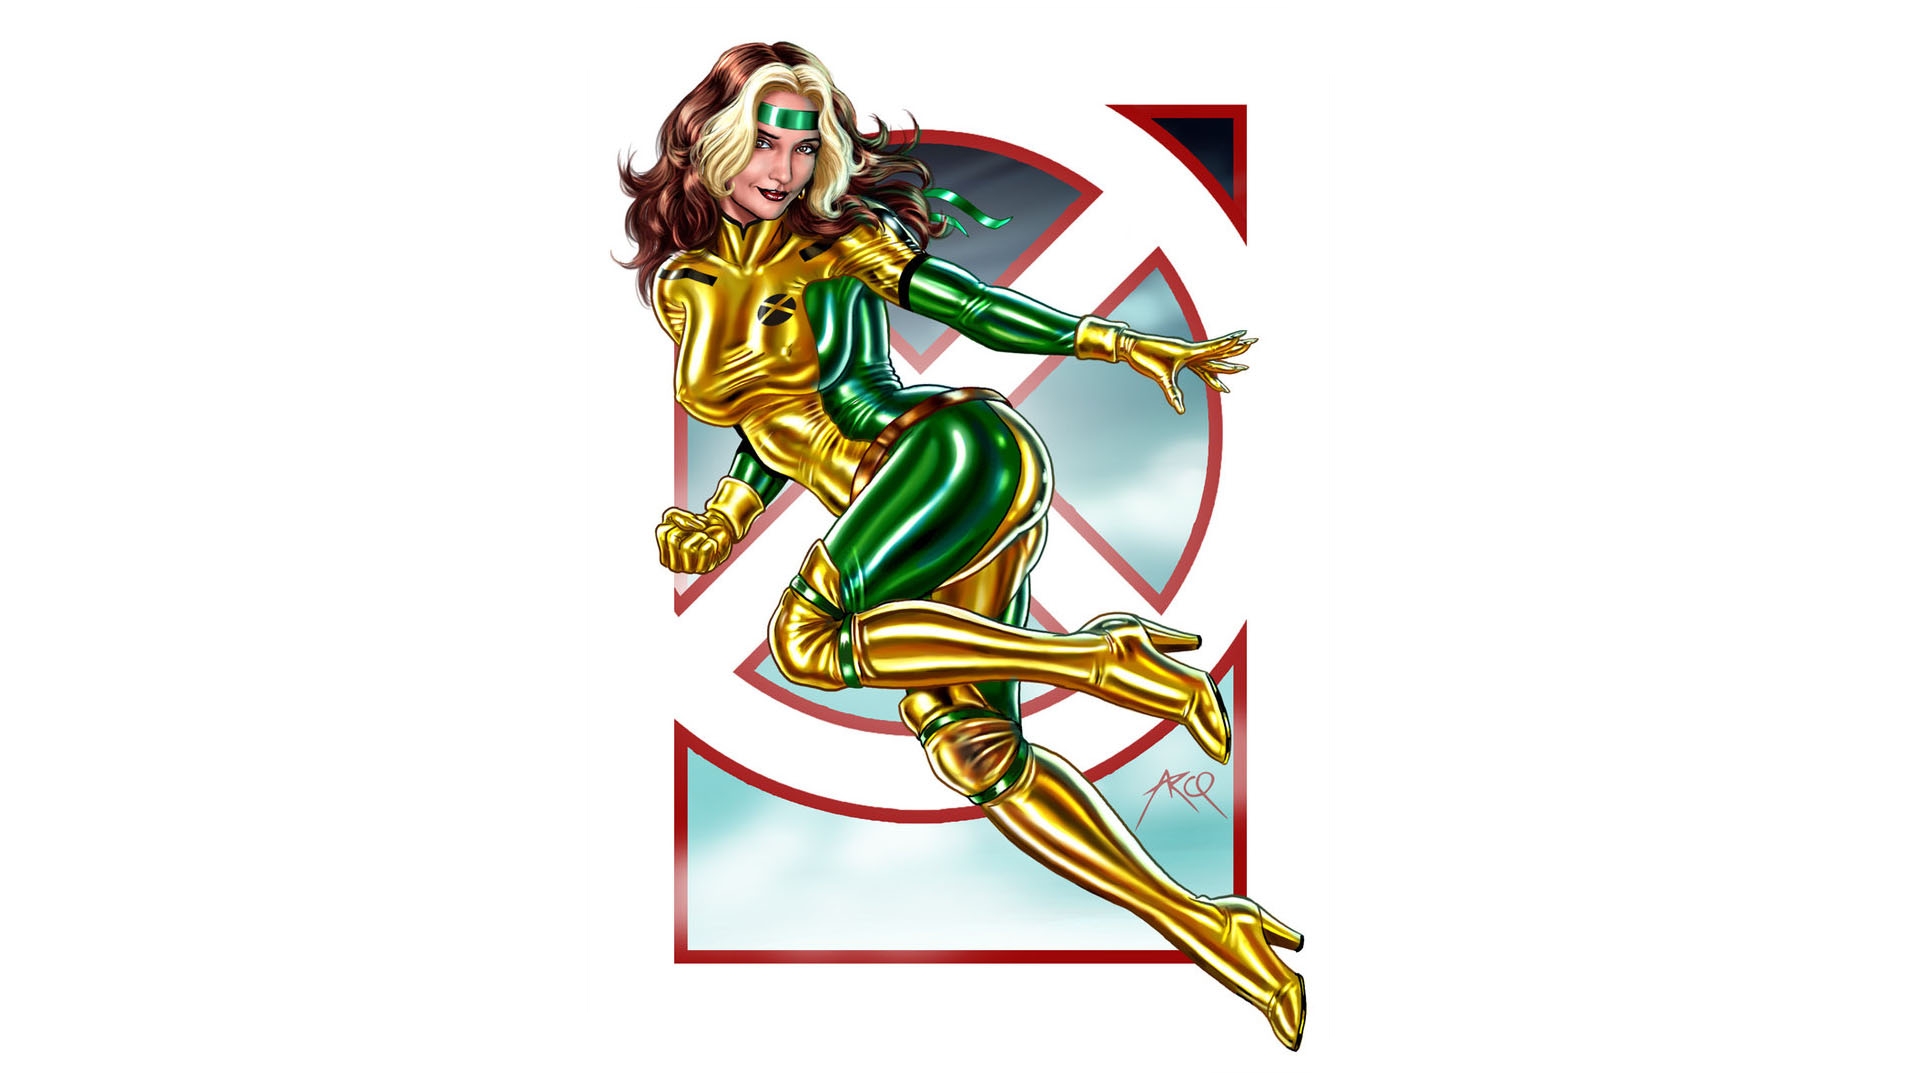 Download mobile wallpaper Rogue (Marvel Comics), X Men, Comics for free.